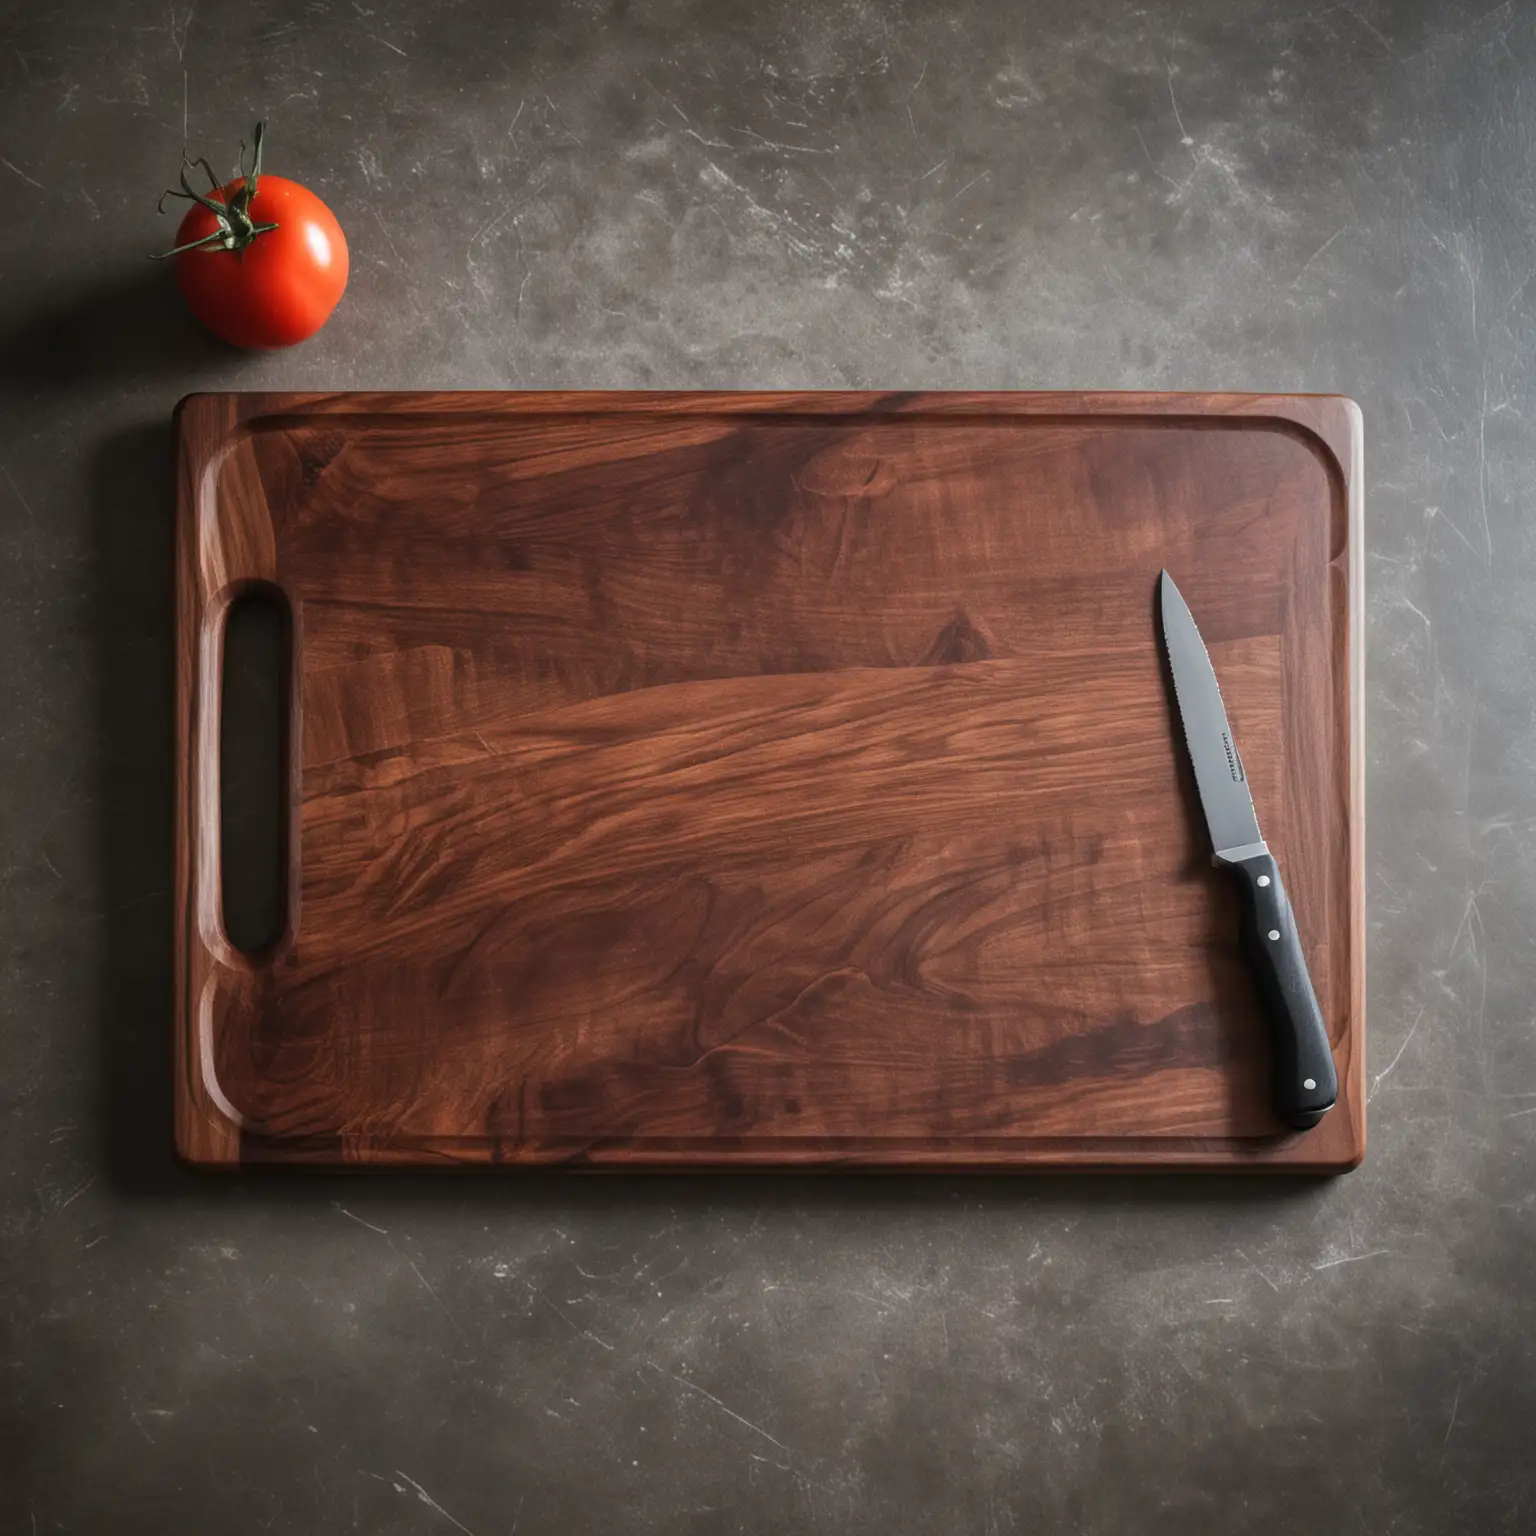 Kitchen Scene Knife on Dark Cutting Board